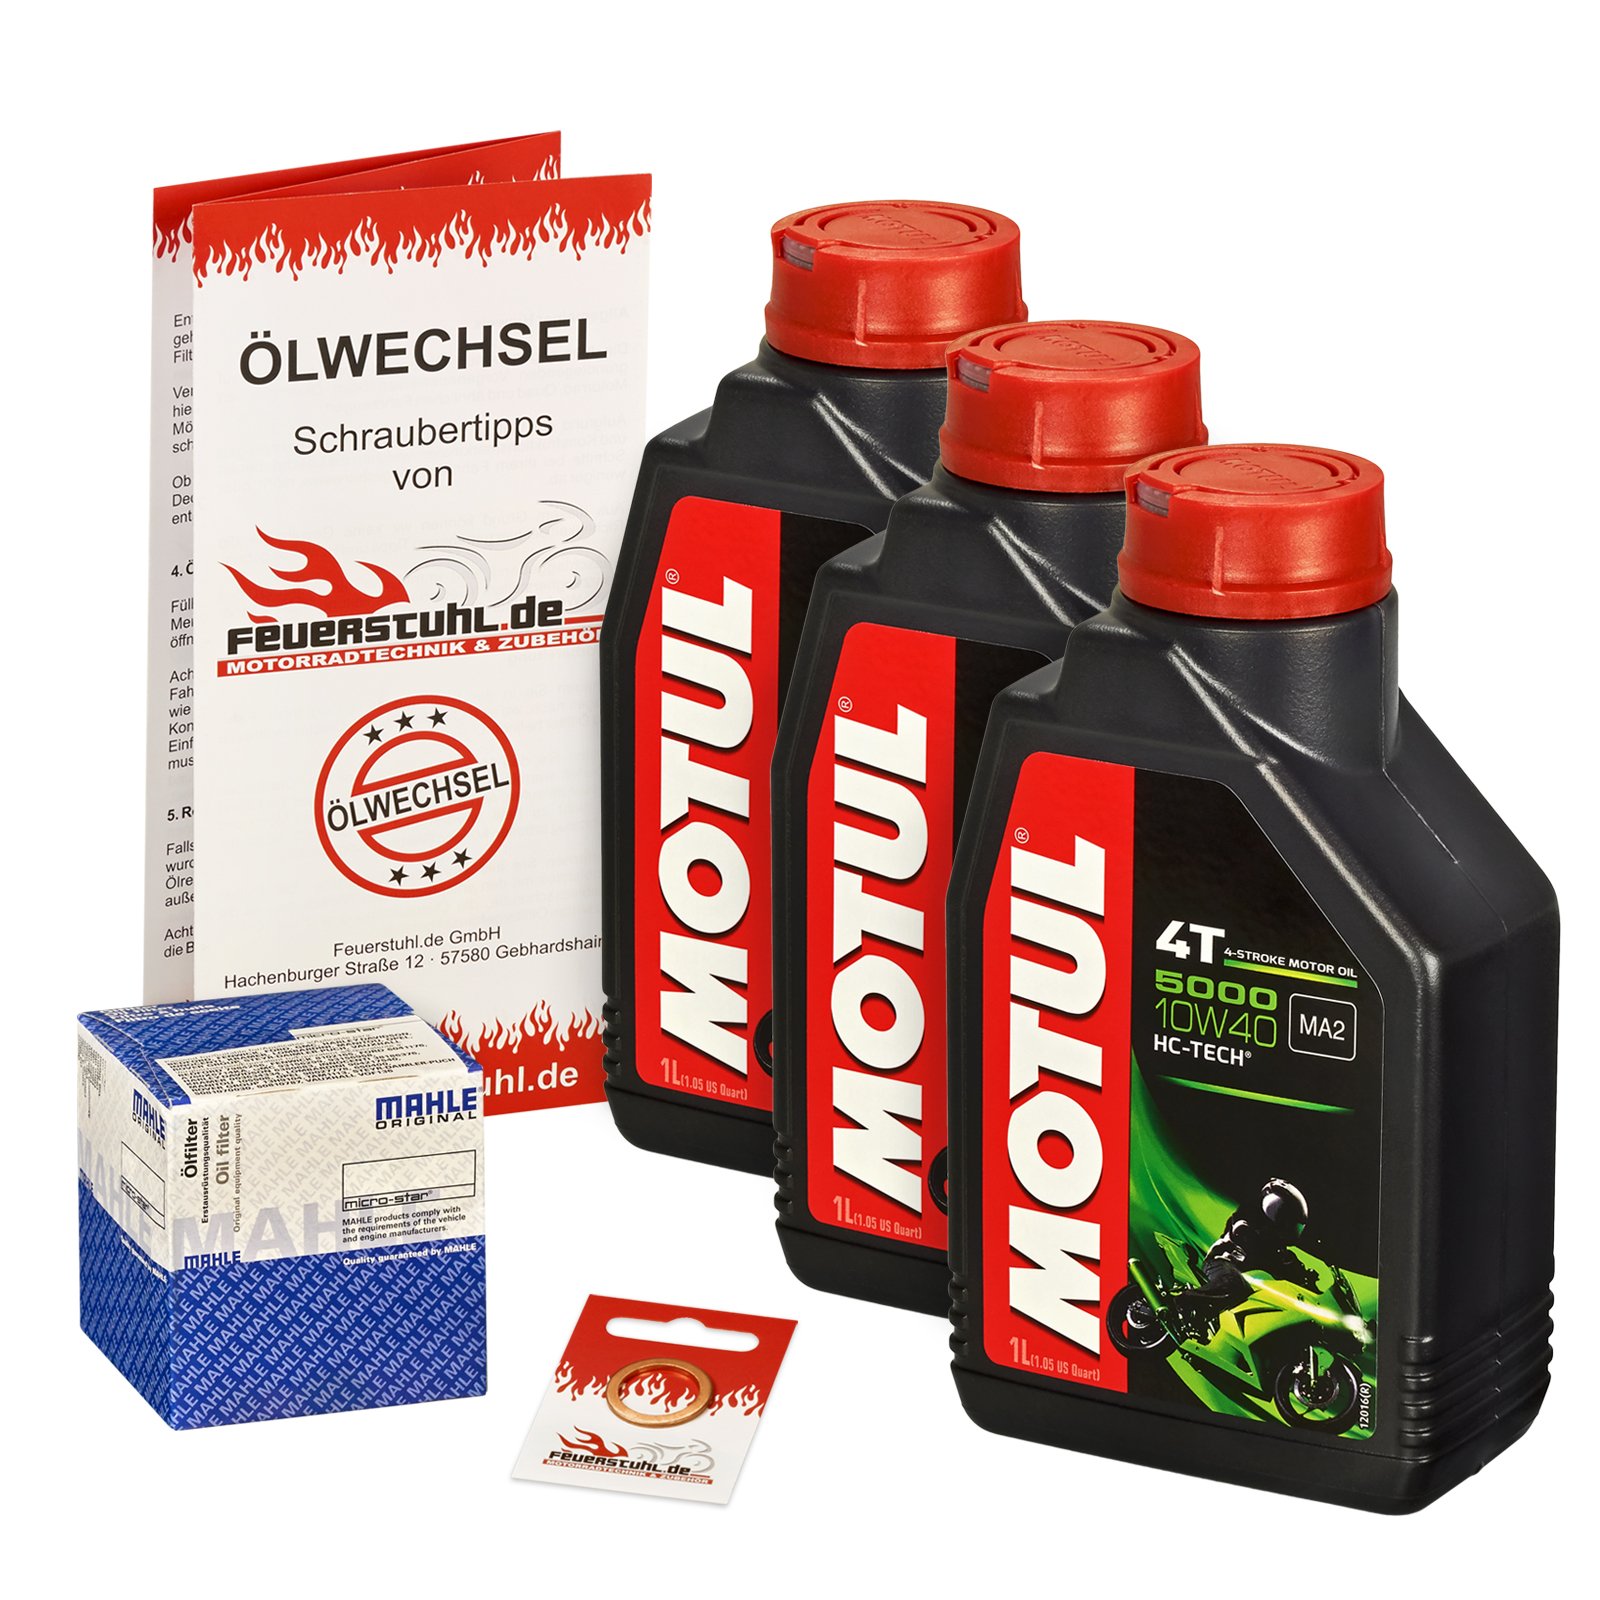 Motul 10W-40 Öl + Mahle Ölfilter für Suzuki GSXR 750, 06-15, CF CW C4 - Ölwechselset inkl. Motoröl, Filter, Dichtring von Motul